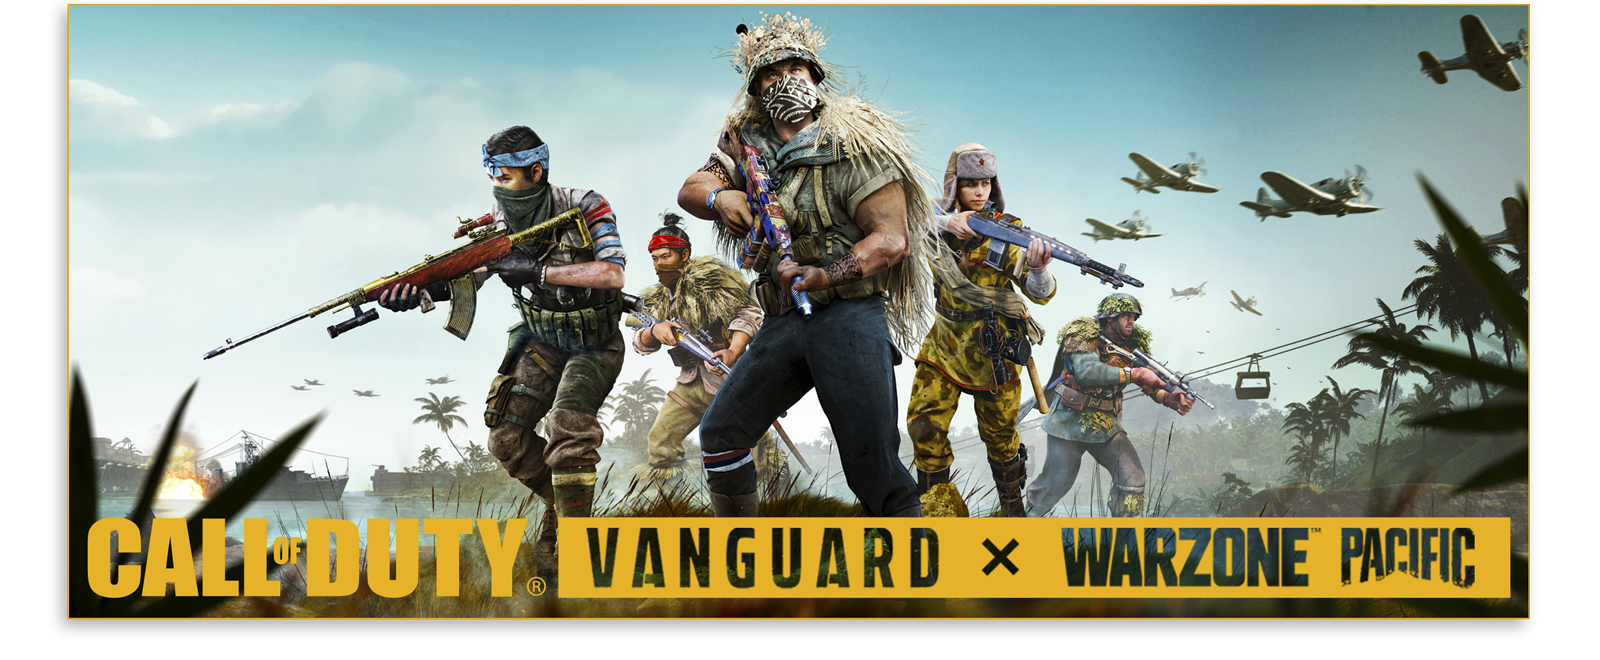 Saison 1 de Call of Duty Vanguard et Warzone - Illustration